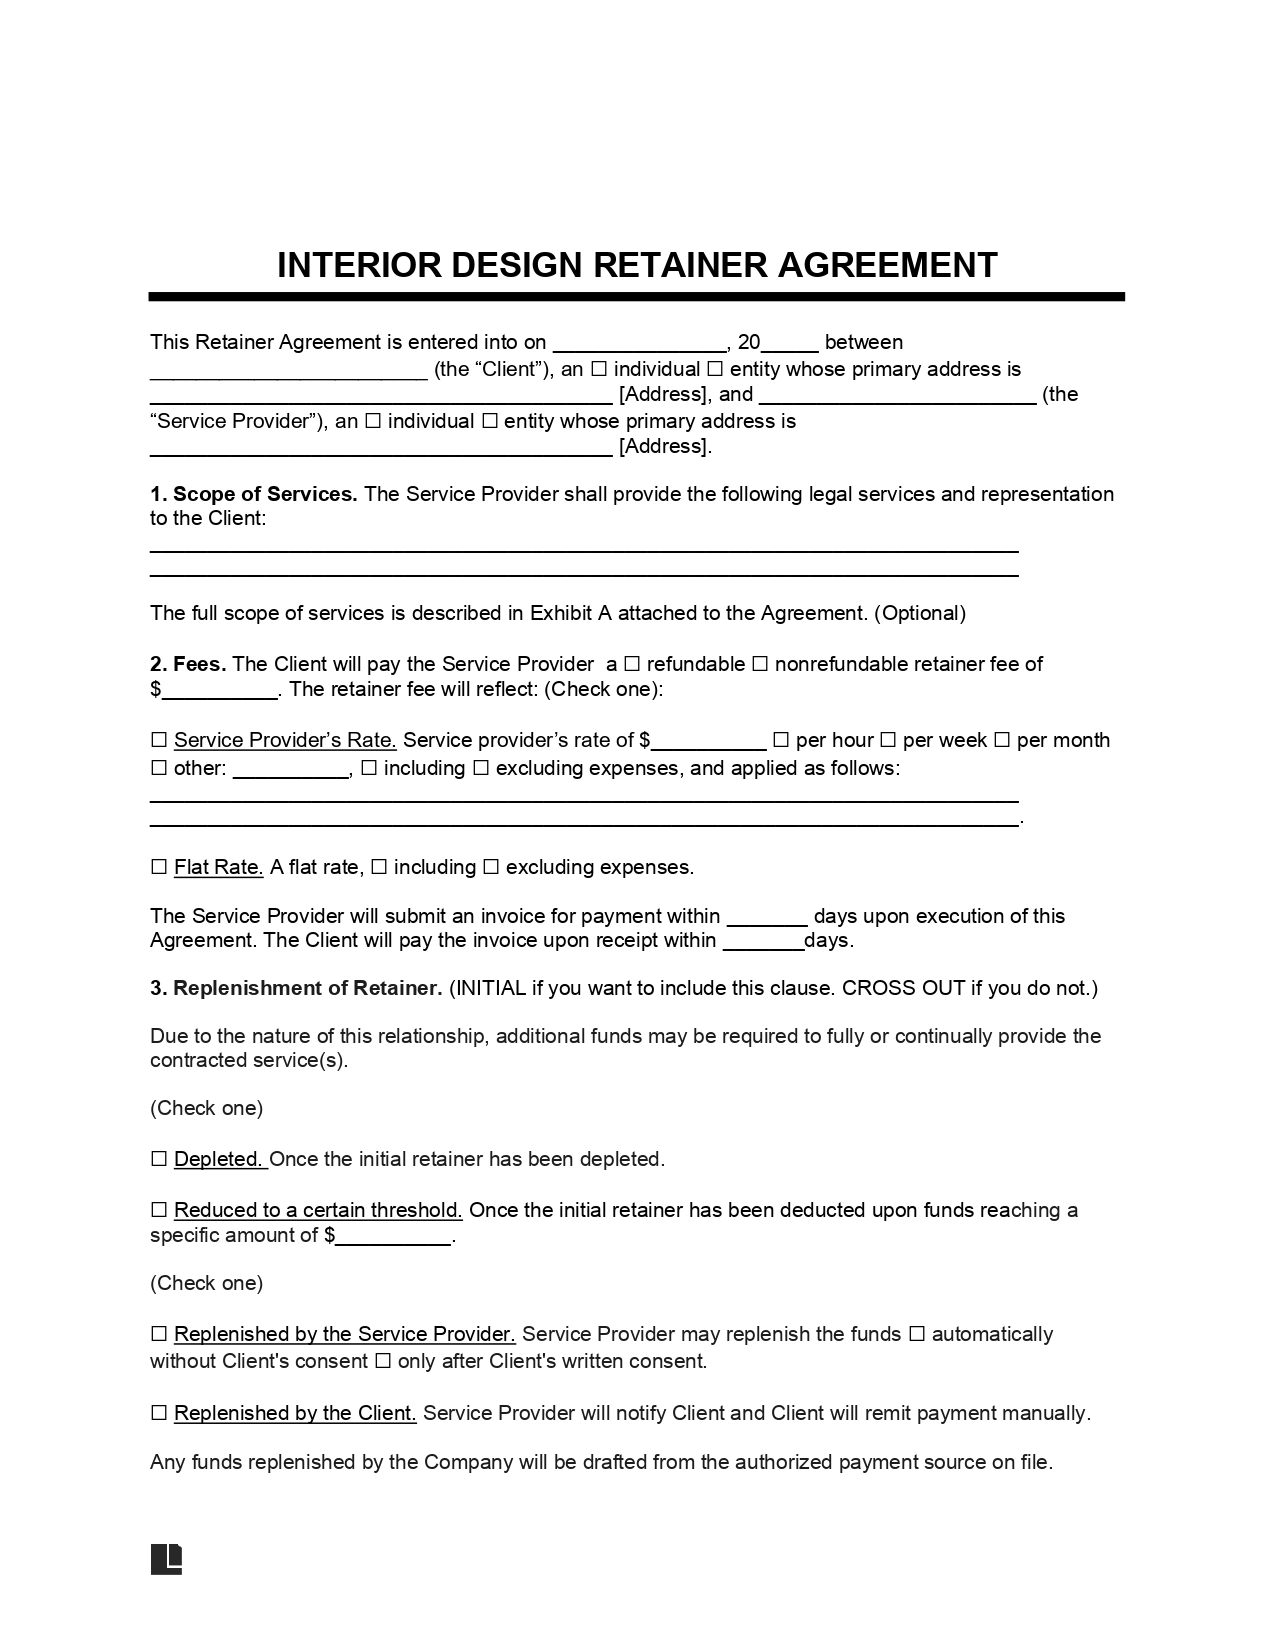 Interior Design Retainer Agreement 